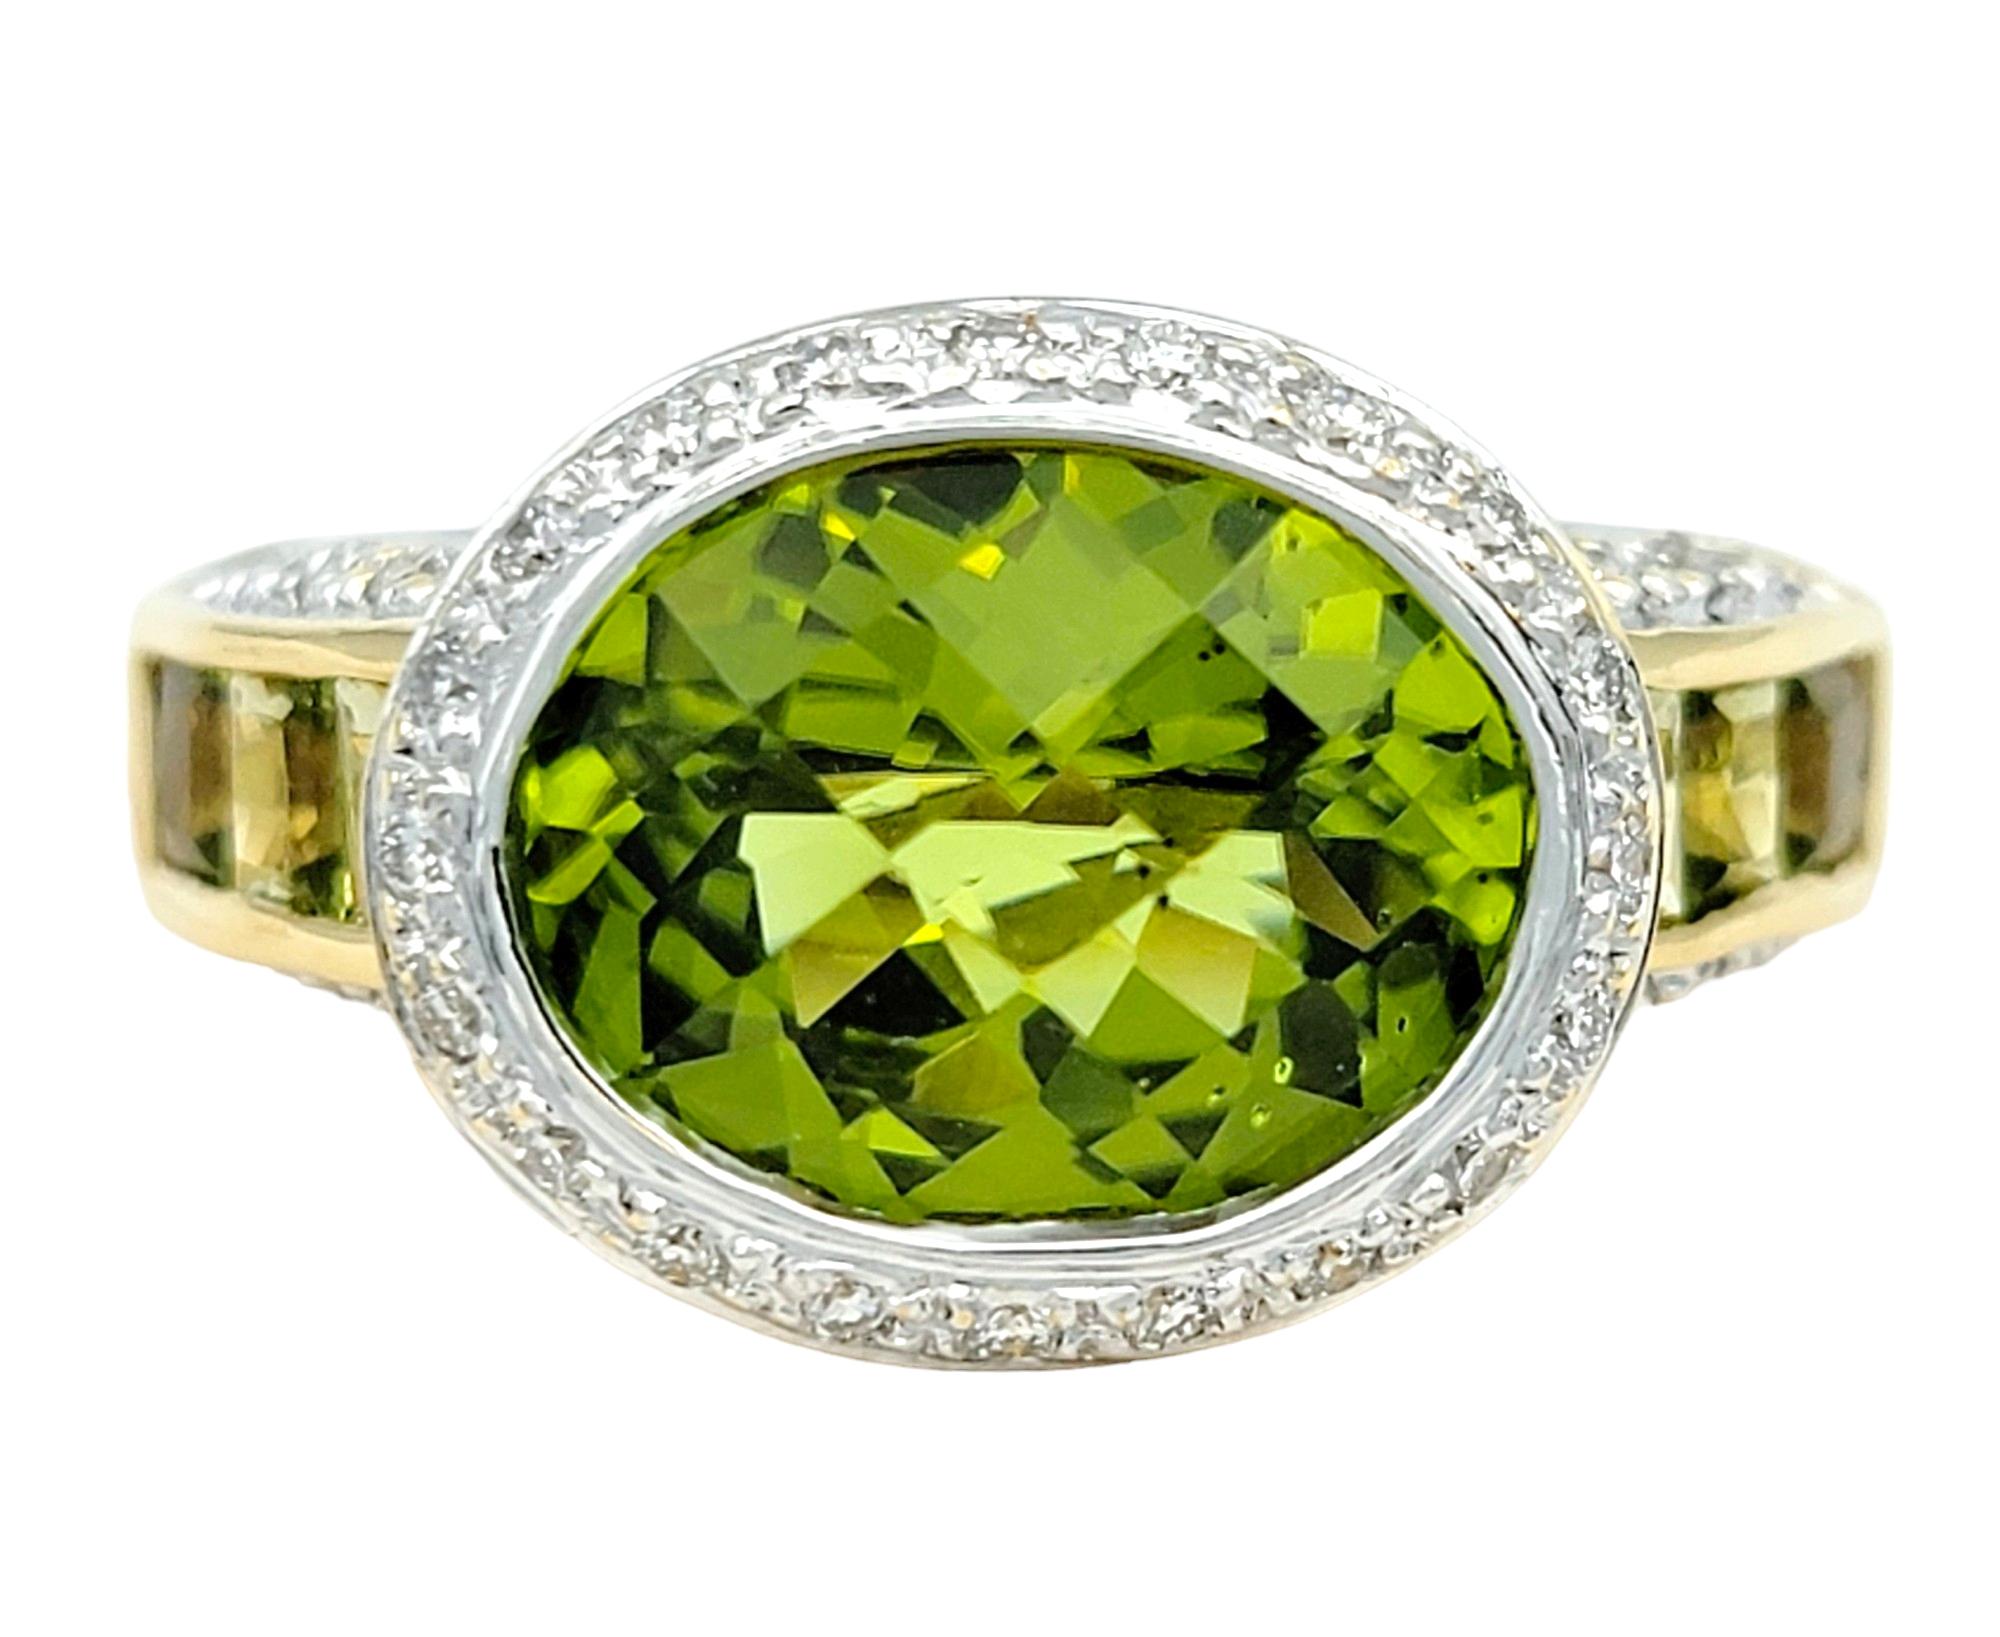 Taille de l'anneau : 7

Cette magnifique bague en péridot et diamant de Bellarri, sertie dans de l'or jaune 18 carats lustré, est une pièce de joaillerie fine envoûtante qui capture l'essence de l'élégance et de la sophistication. Au cœur de la